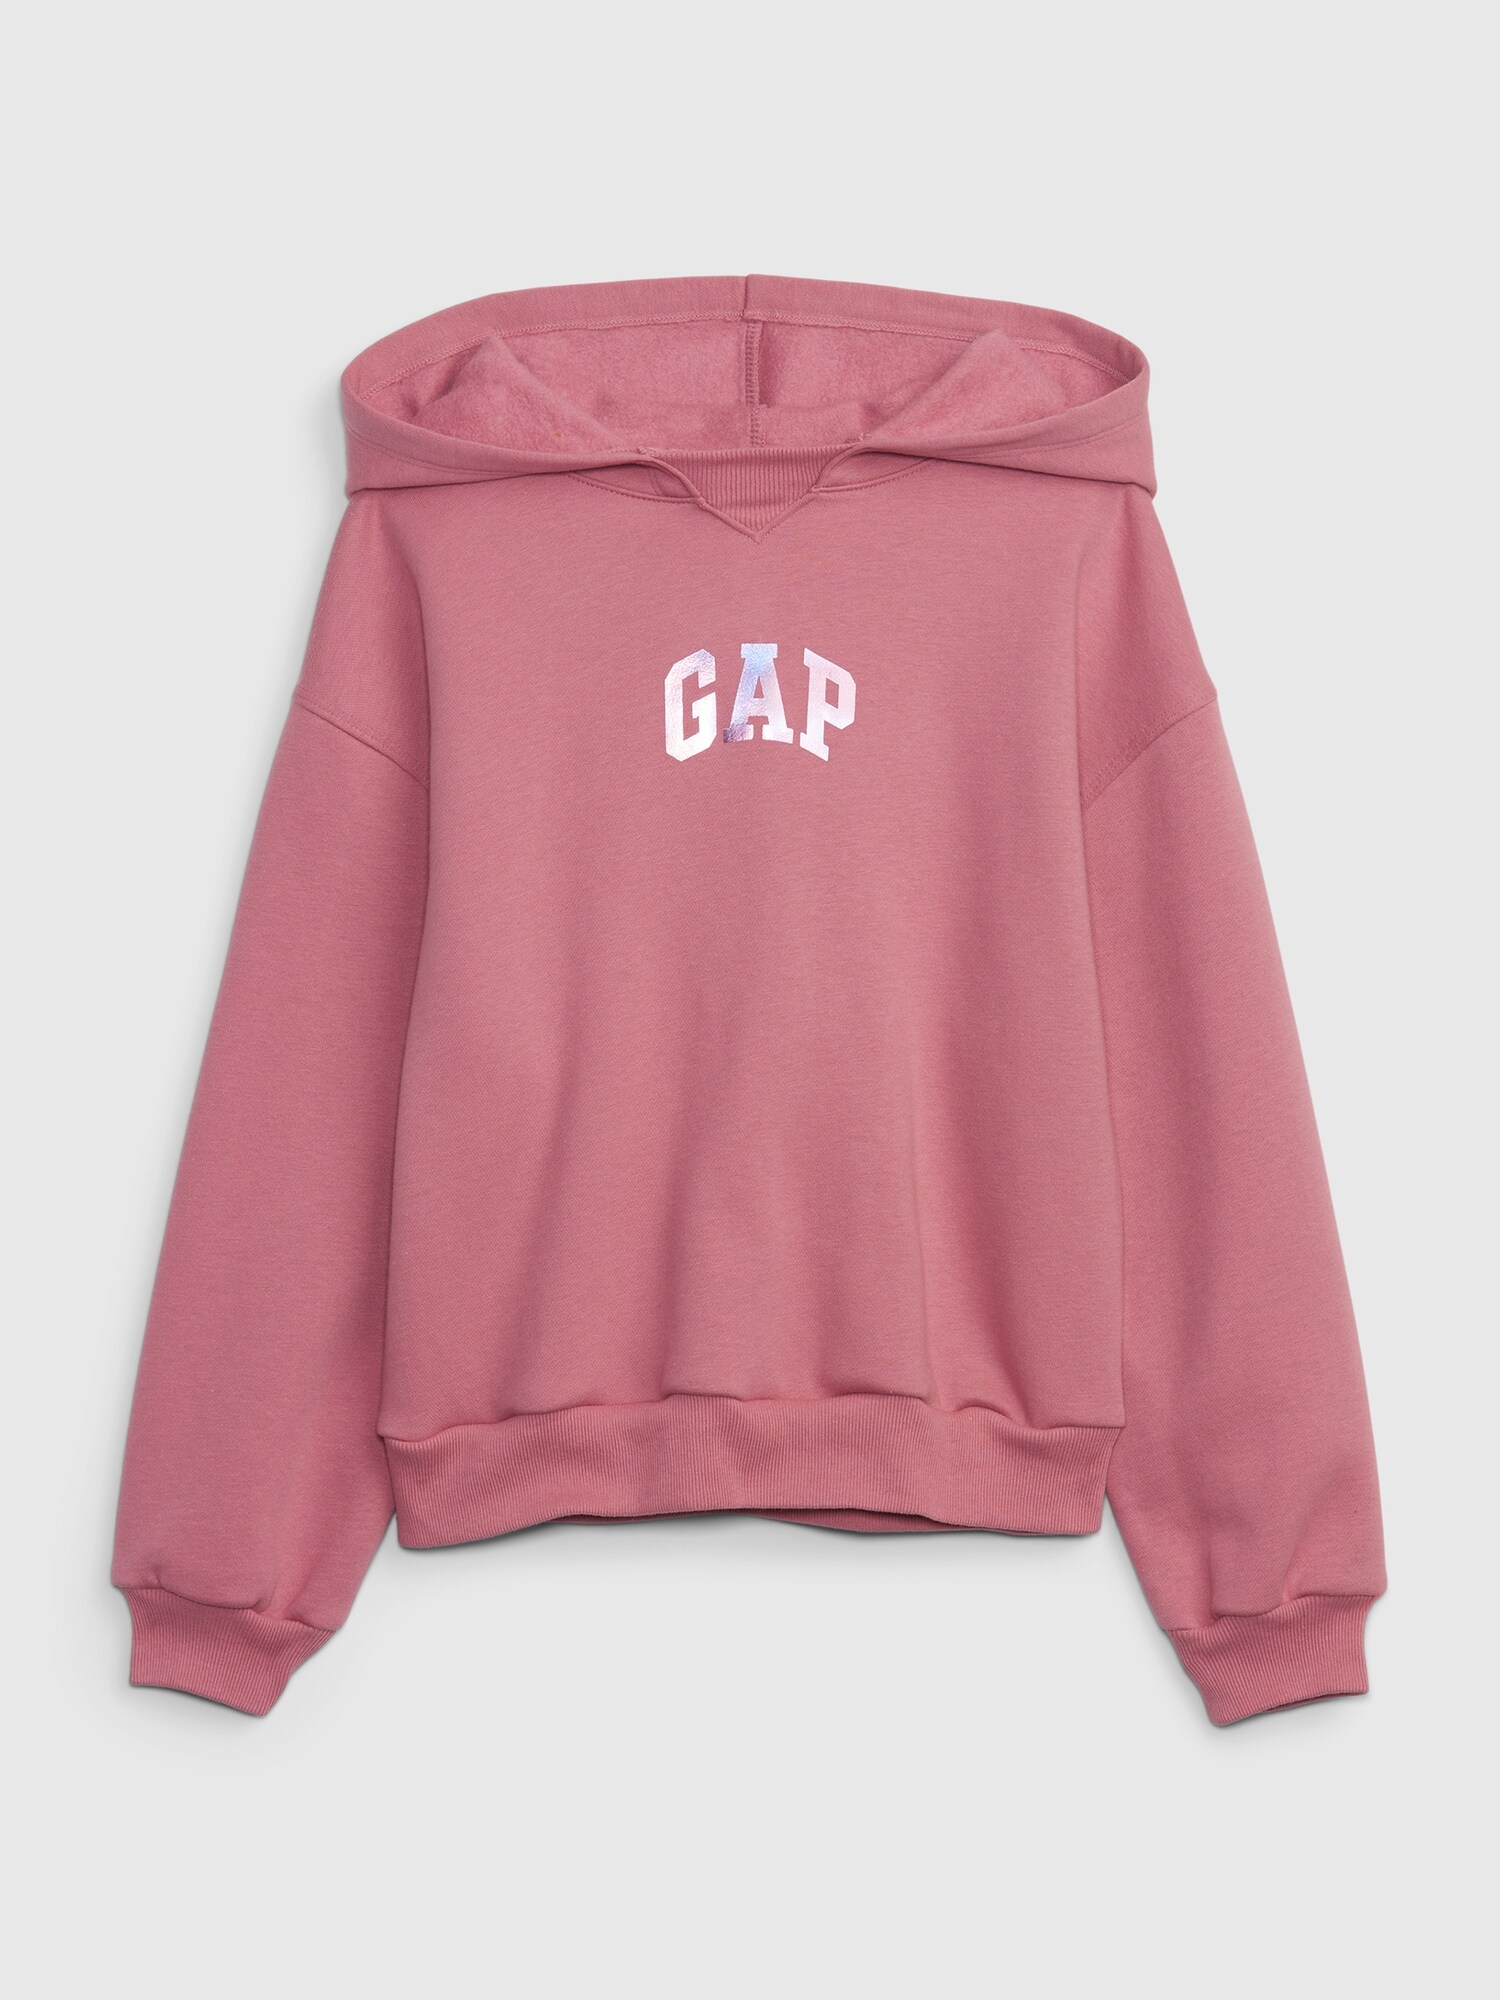 GAPアーチロゴ パーカー (キッズ) - Gap公式オンラインストア